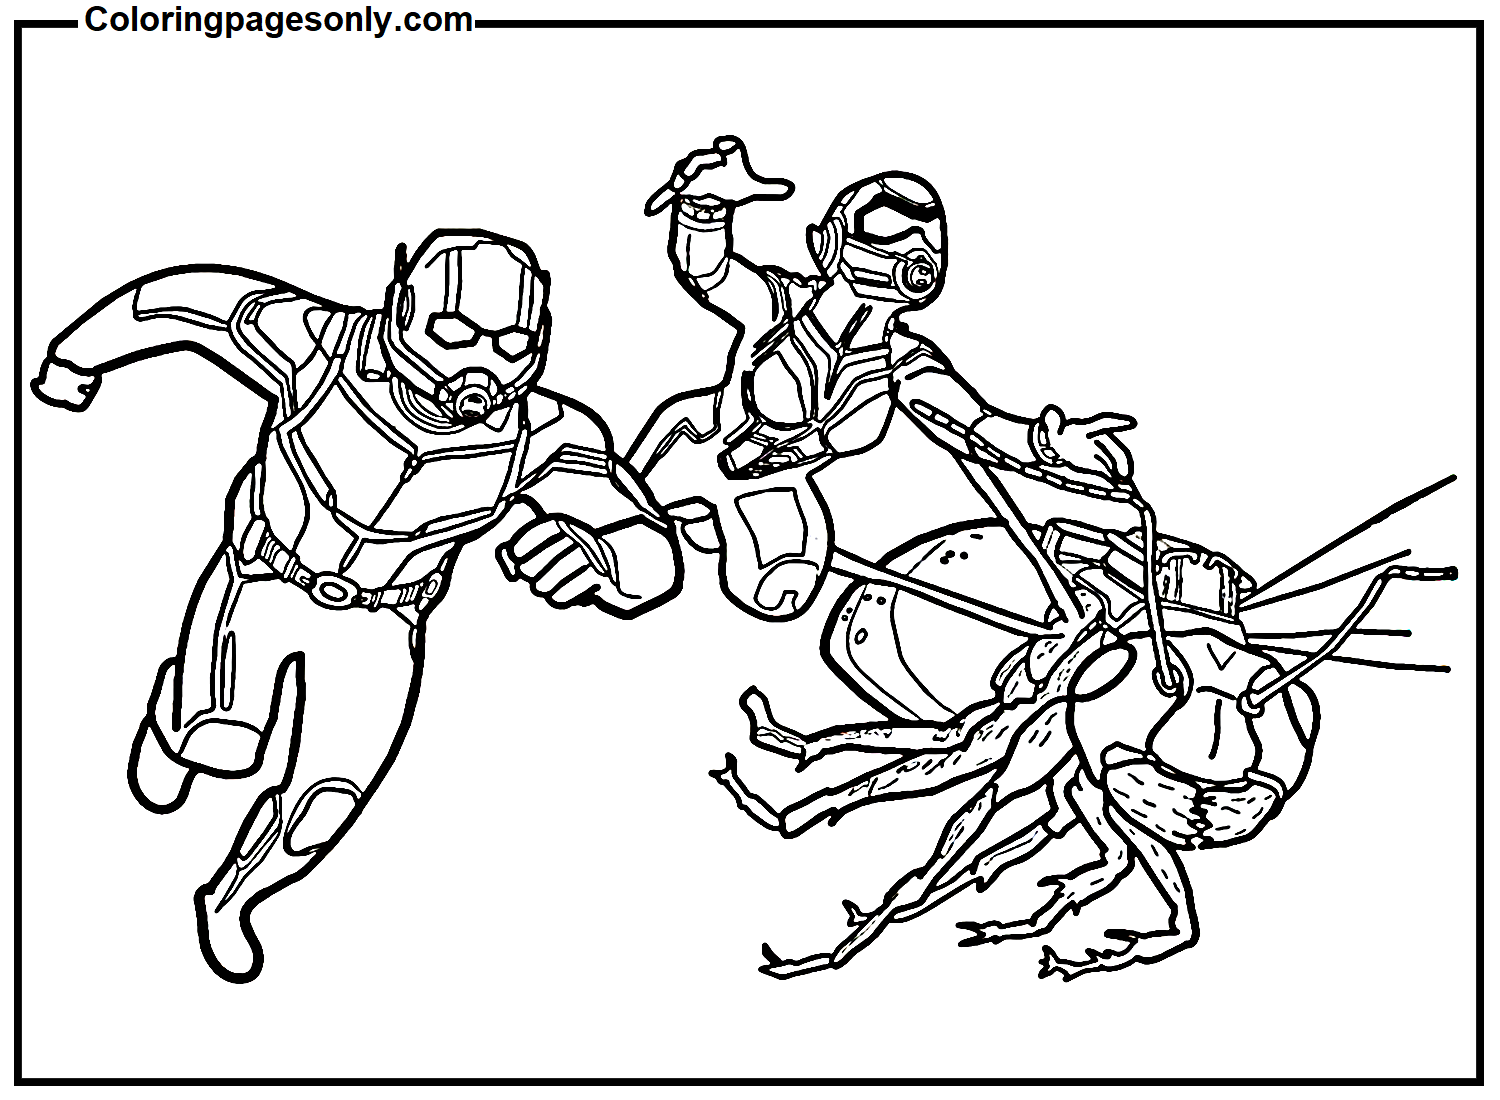 Ant-Man und The Wasp Superhelden von Ant-man